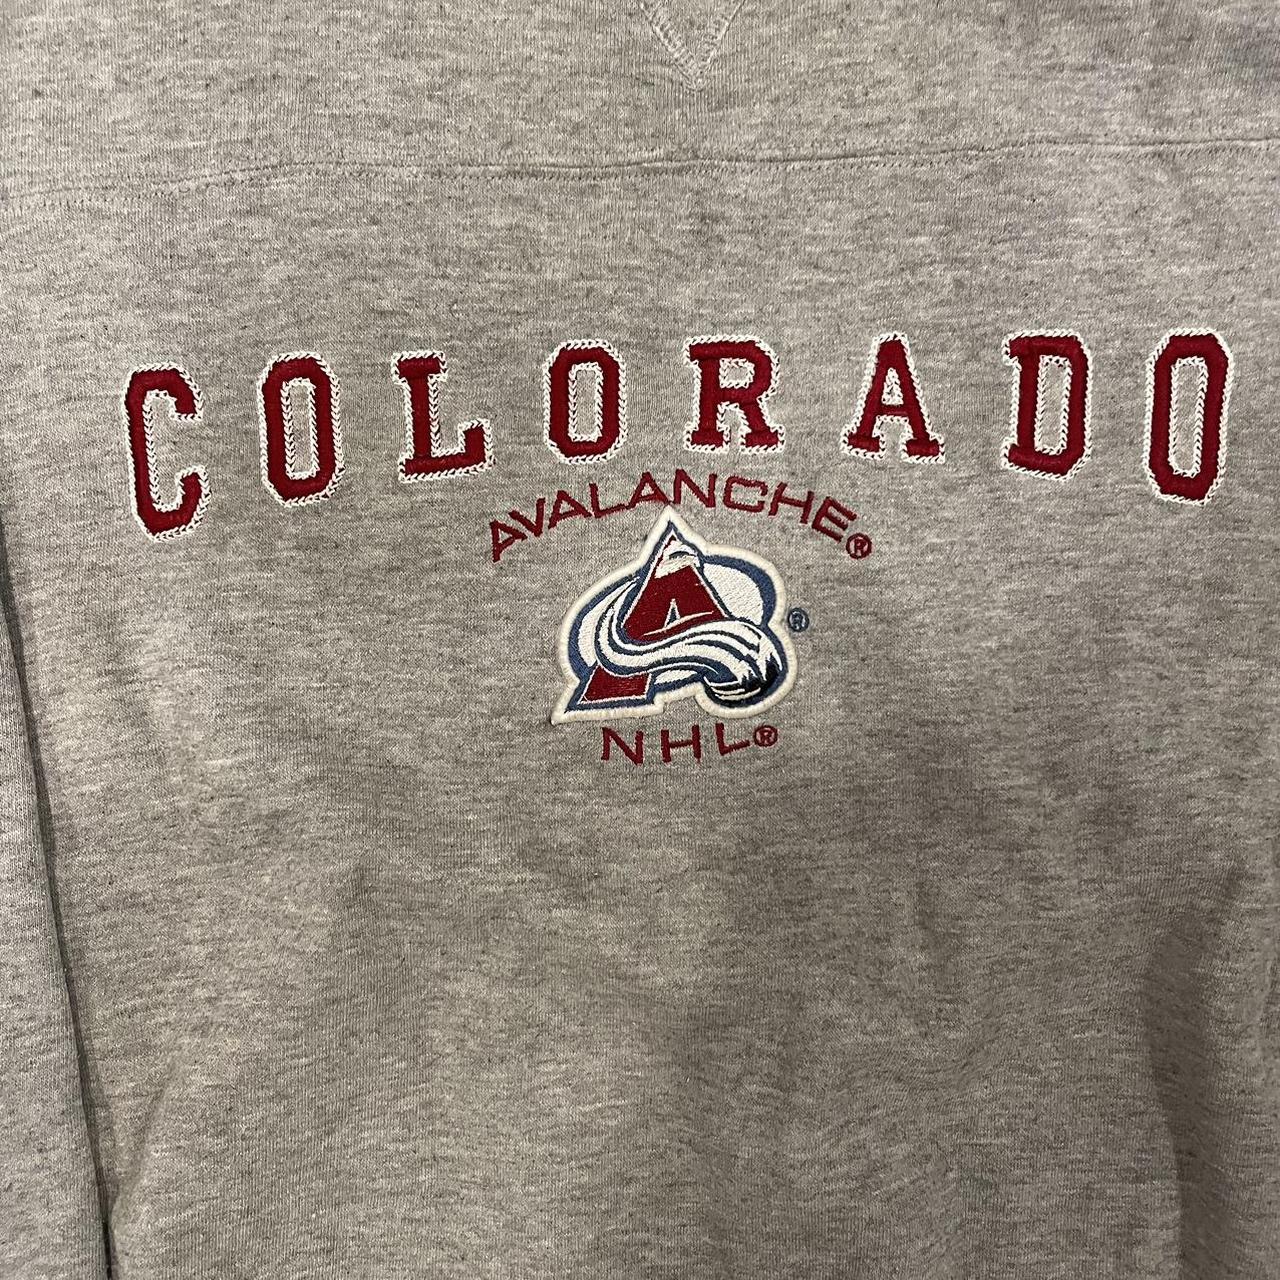 Vintage 90s Colorado Avalanche NHL hockey crewneck sweatshirt by